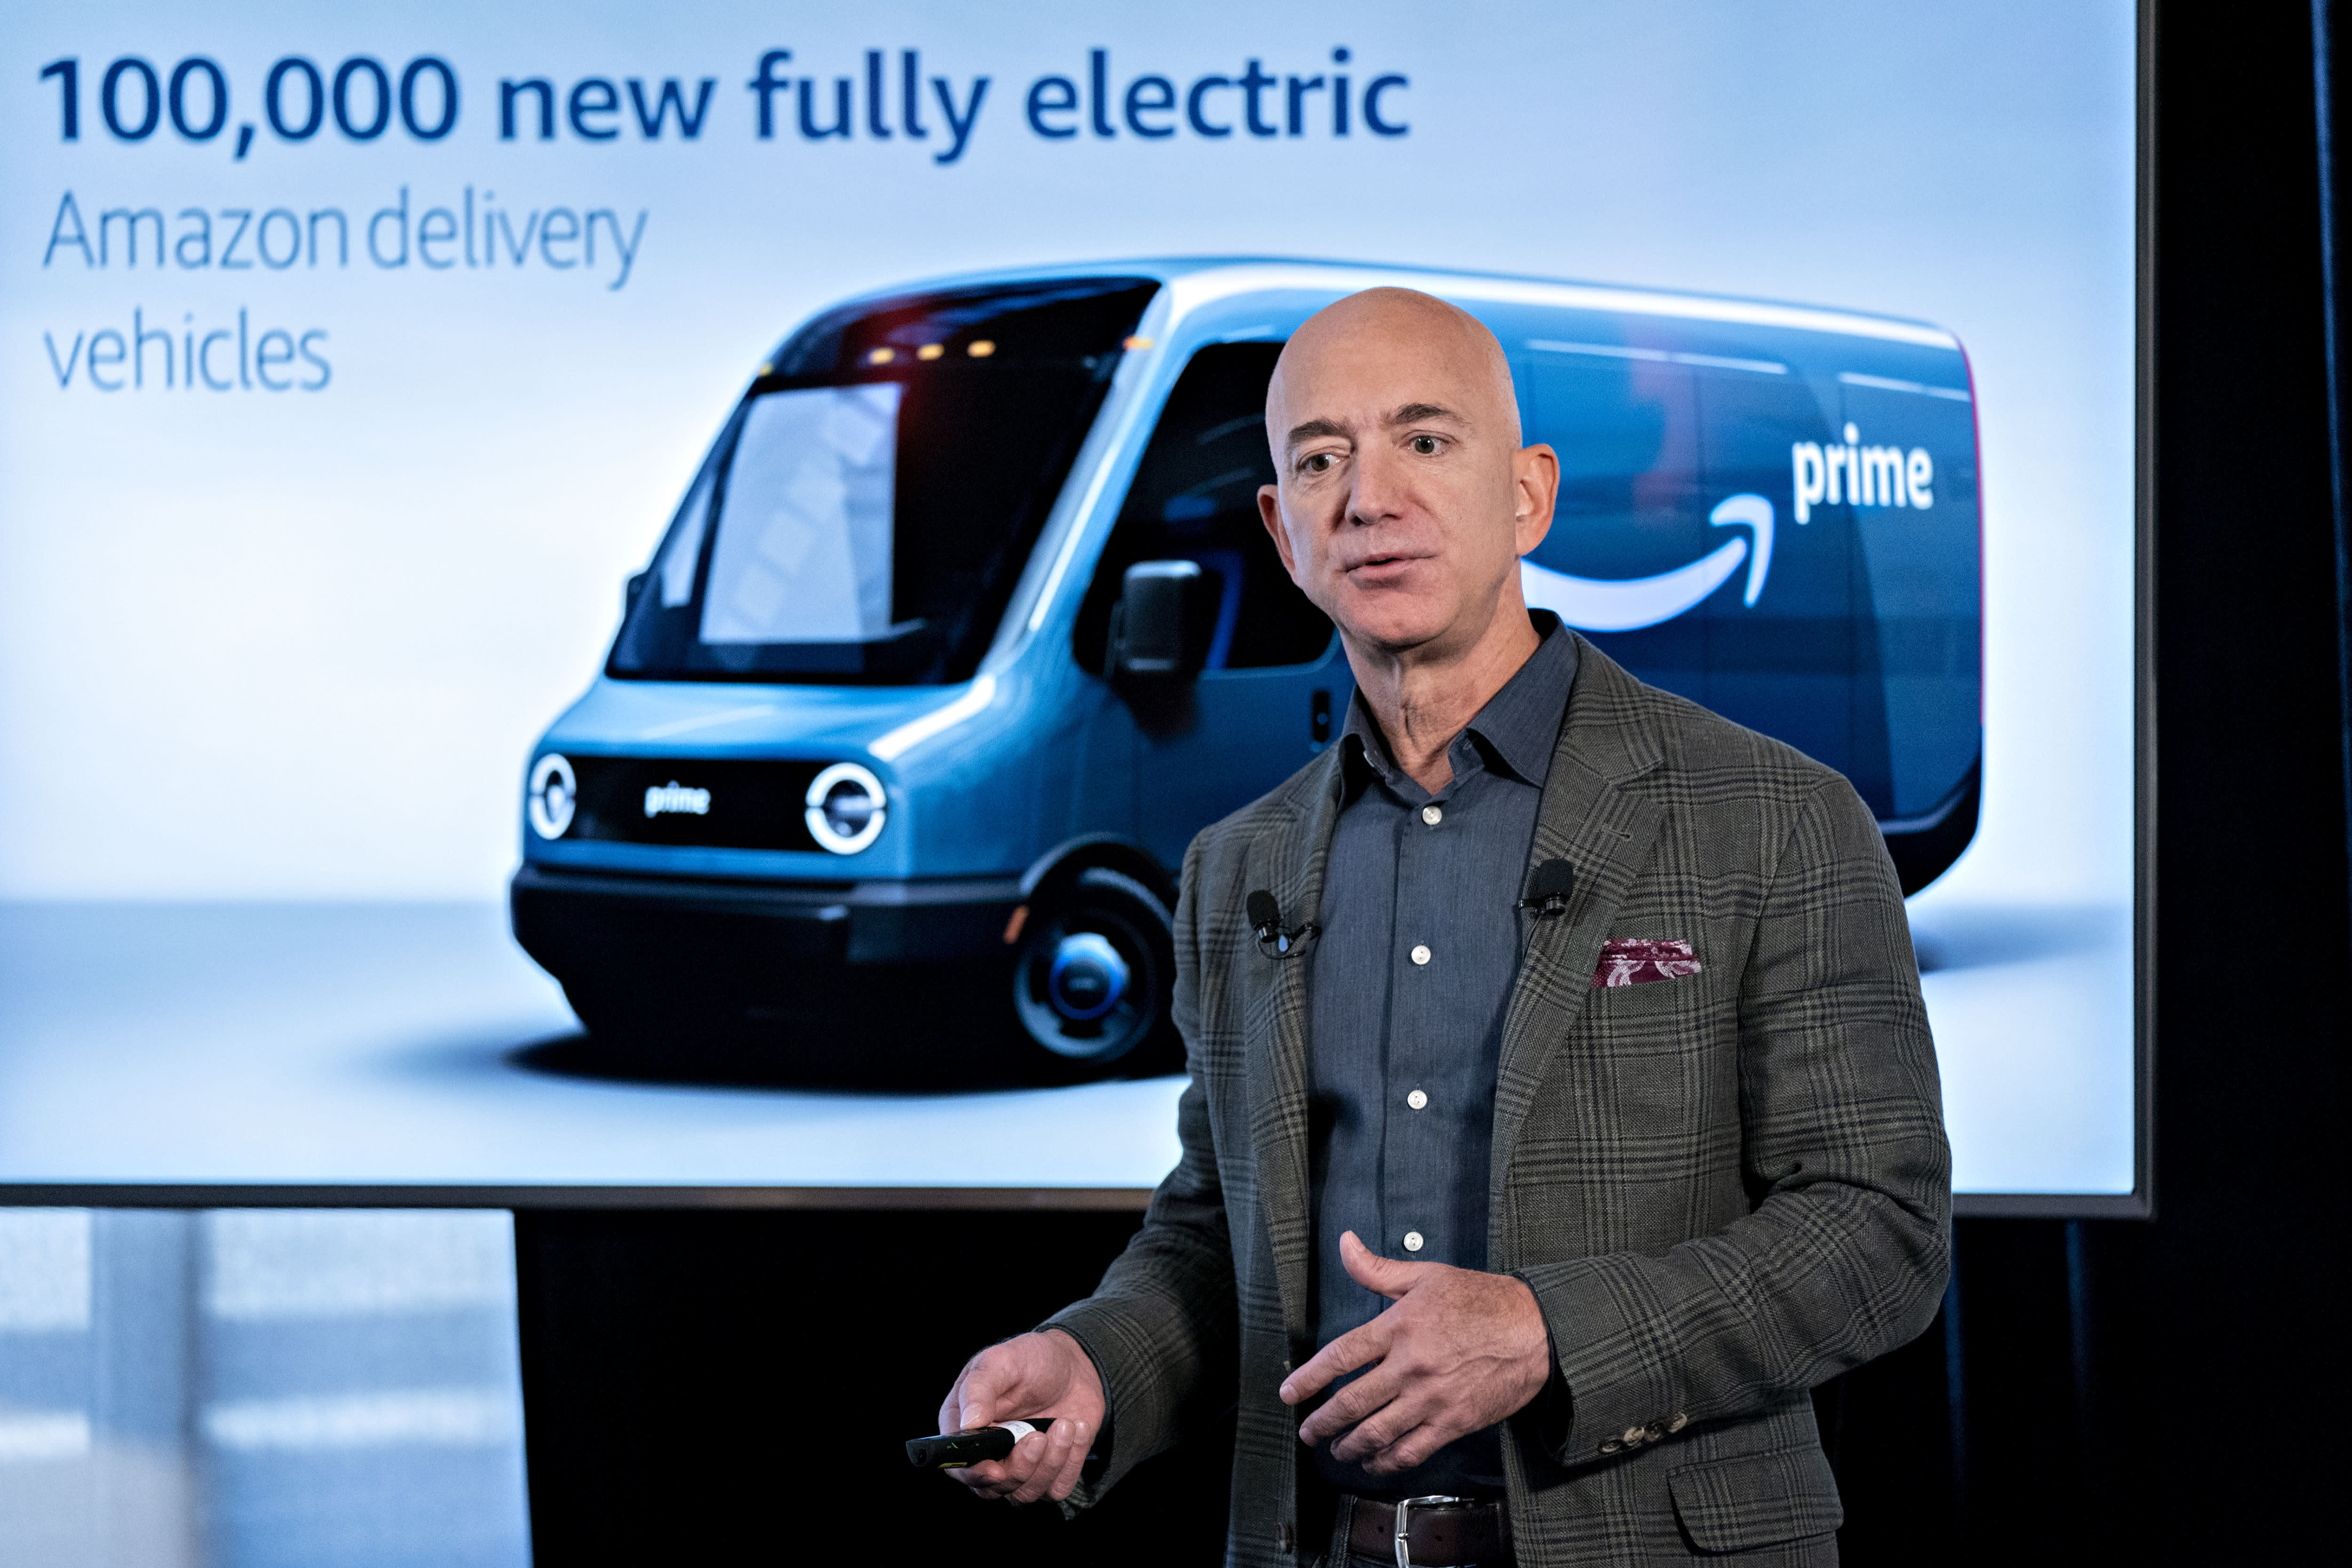 Amazon is purchasing 100,000 Rivian electric vans